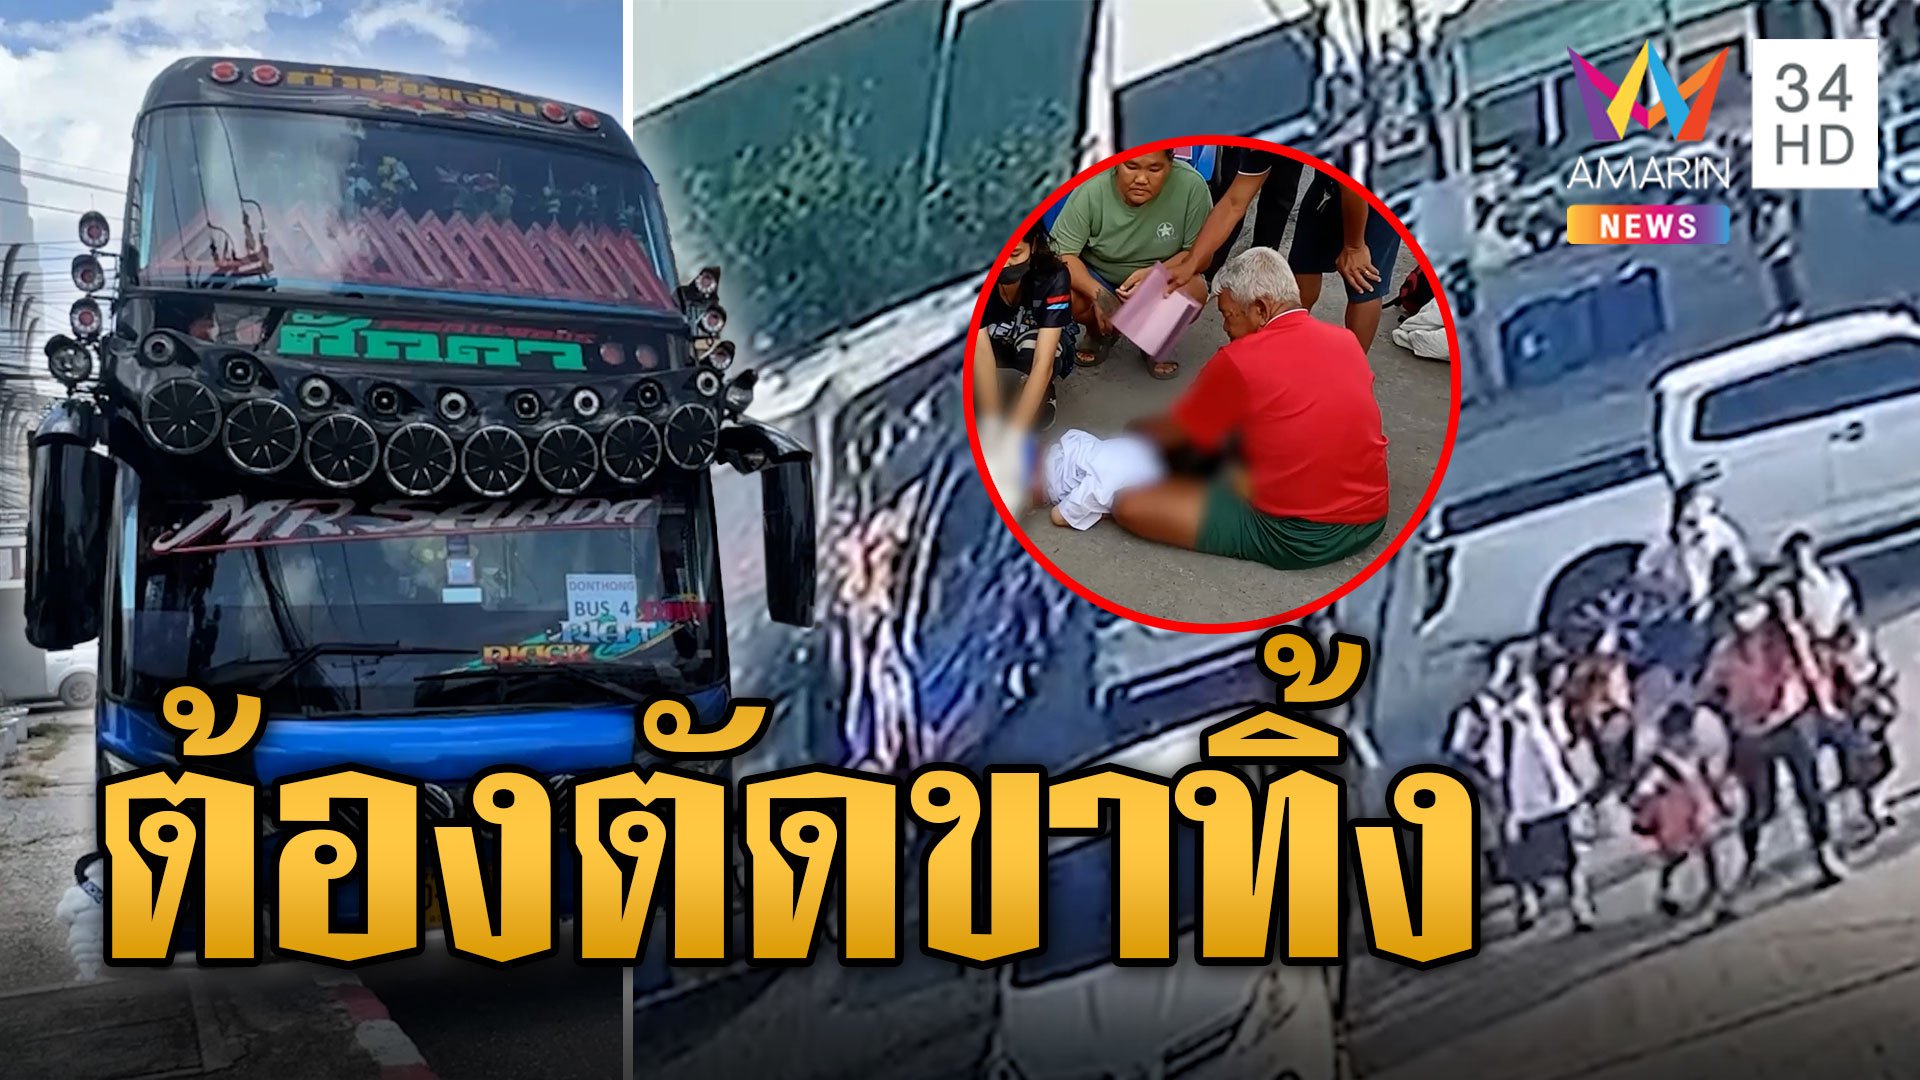 สลด! รถทัวร์ทัศนศึกษาทับขานักเรียน ป.3 หมอบอกต้องตัดขาถึงสะโพก | ข่าวอรุณอมรินทร์ | 9 ส.ค. 66 | AMARIN TVHD34